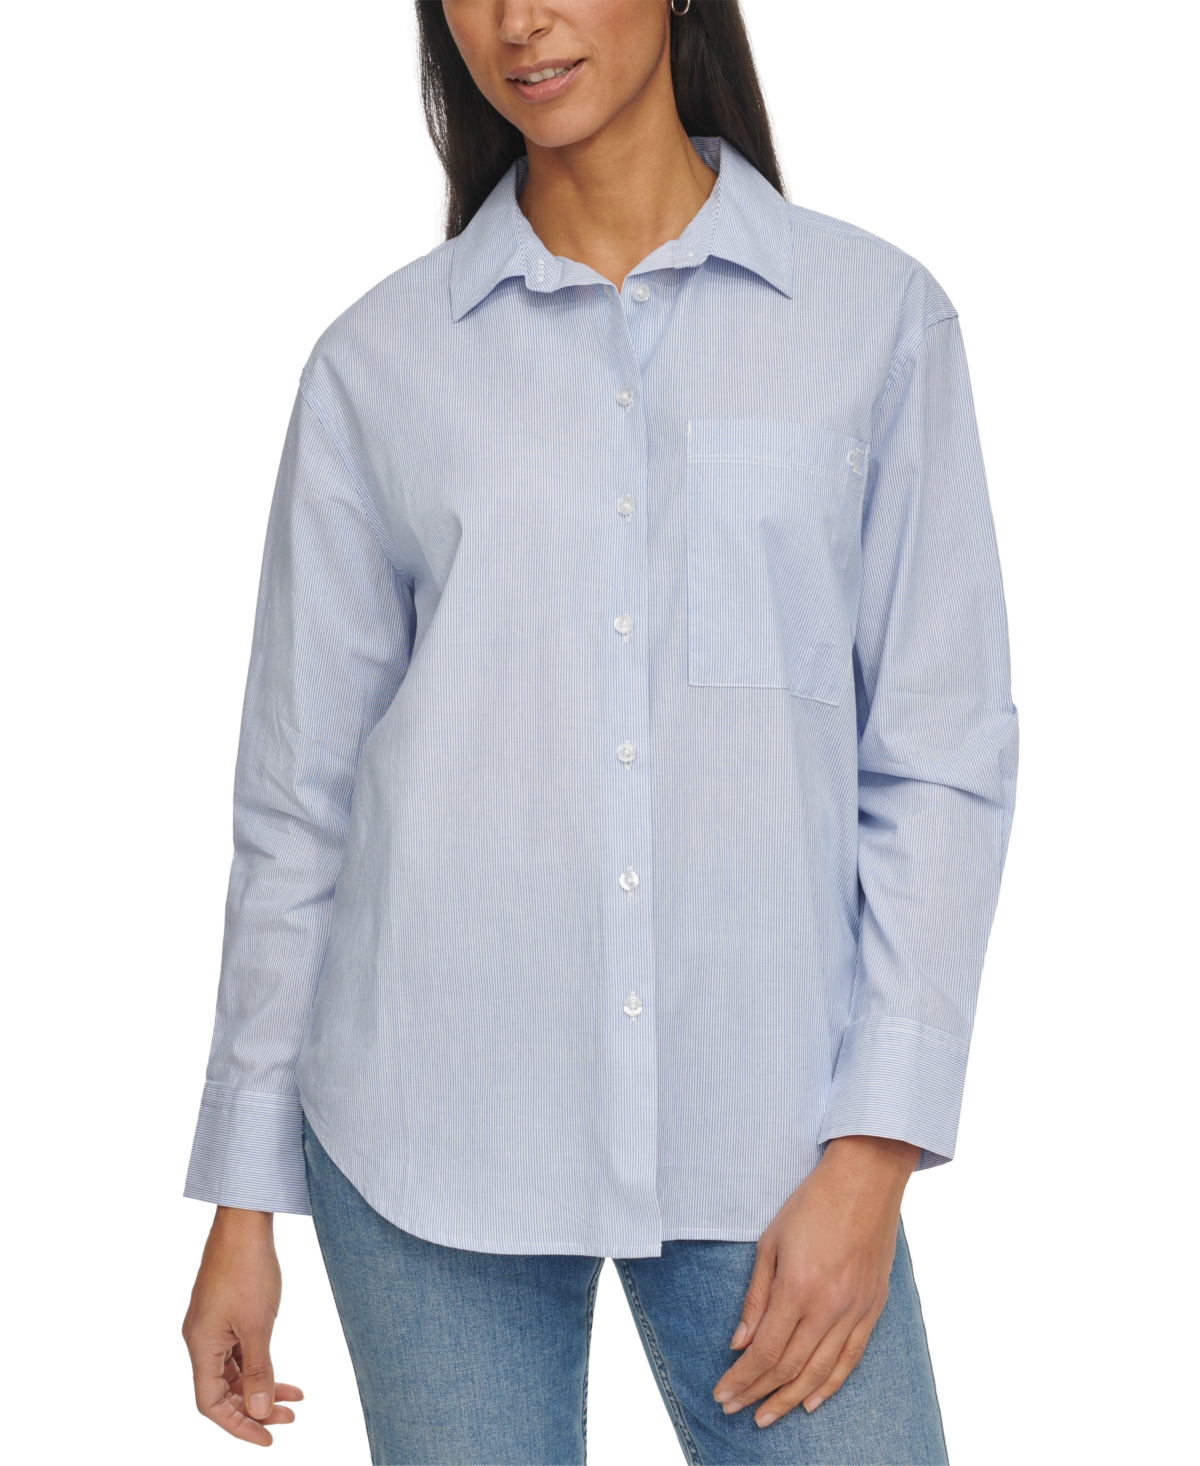 Women's Cotton Striped Boyfriend-Fit Shirt - Blue/White